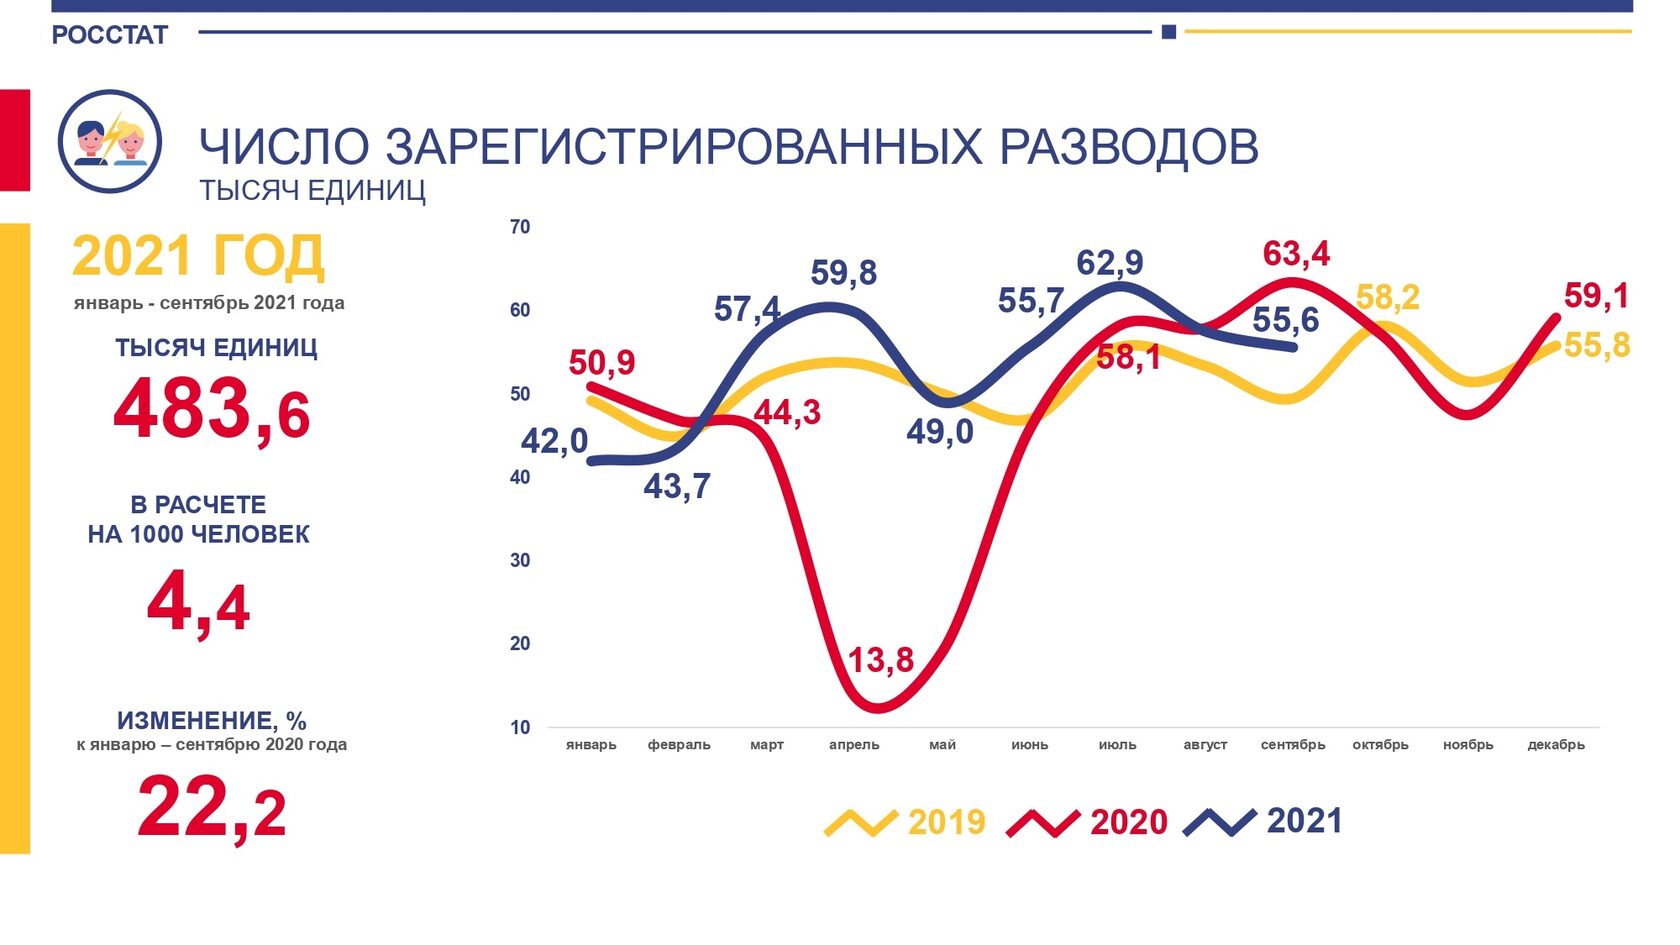 Количество разводов в РФ за последние 3 года